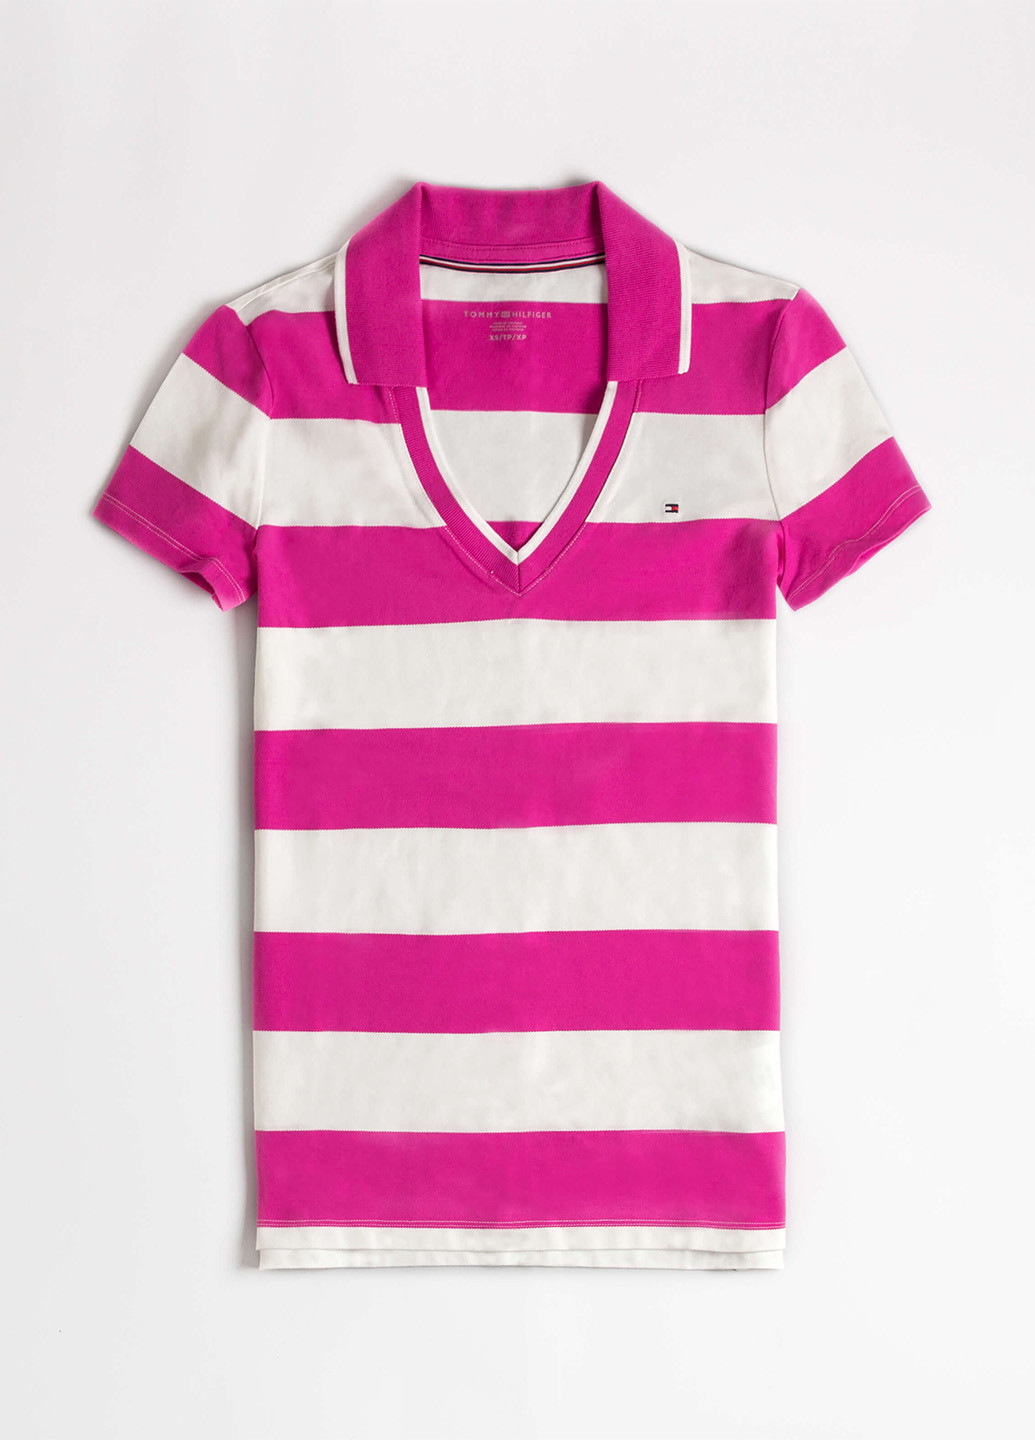 Цветная женская футболка-поло Tommy Hilfiger в полоску